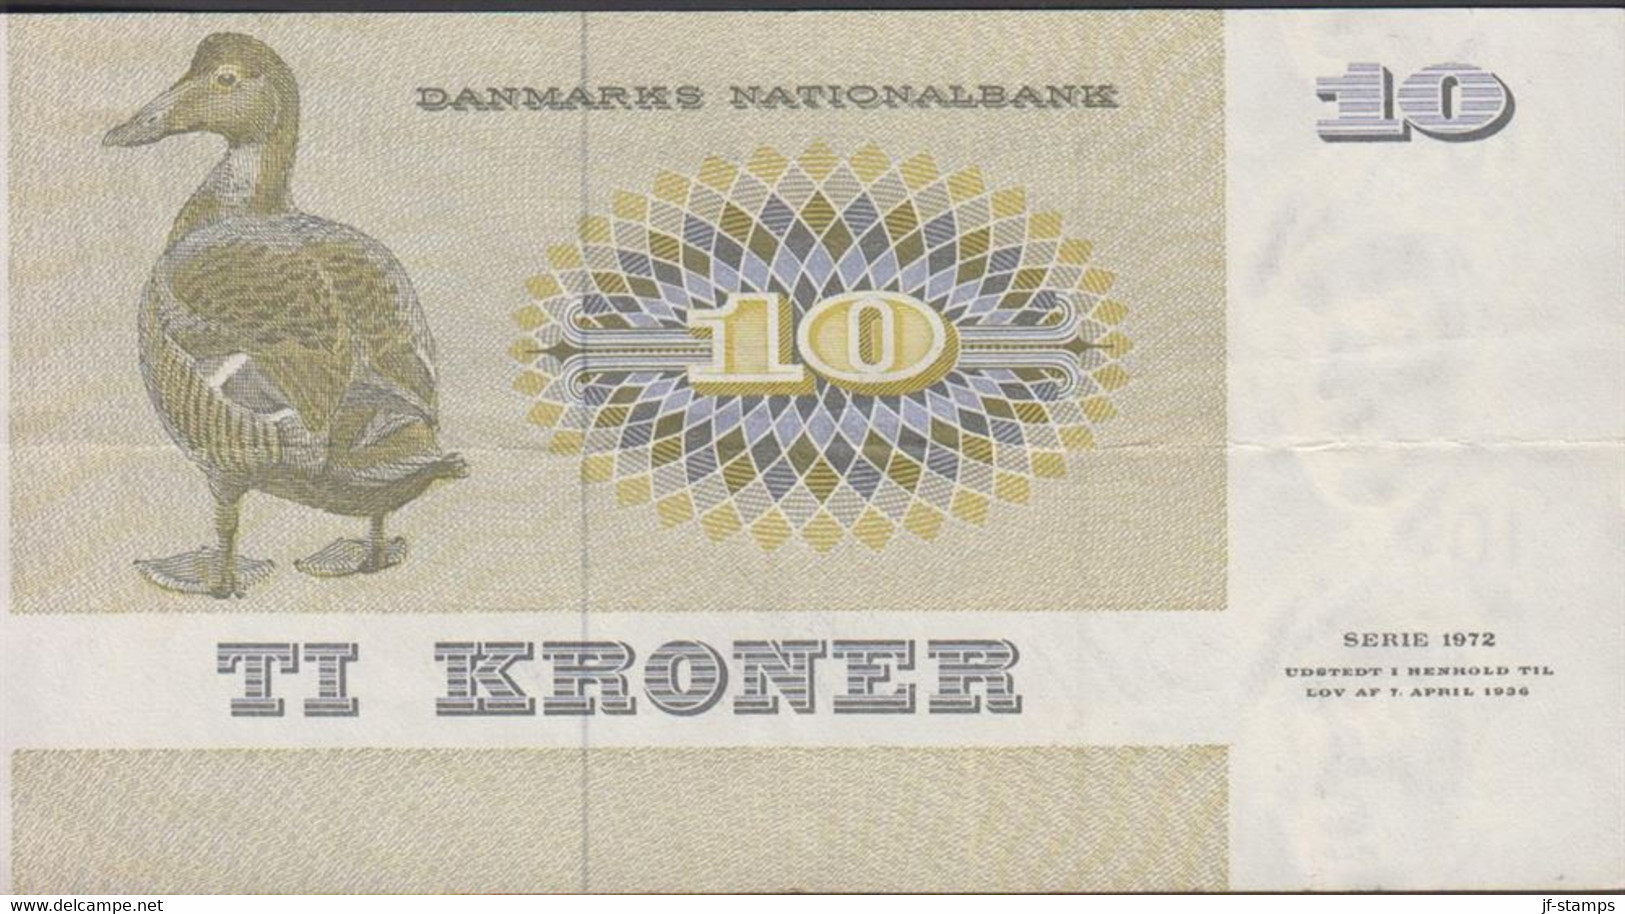 1972. DANMARK. DANMARKS NATIONALBANK 10 KRONER SERIE 1972. Fold.  - JF429806 - Danemark